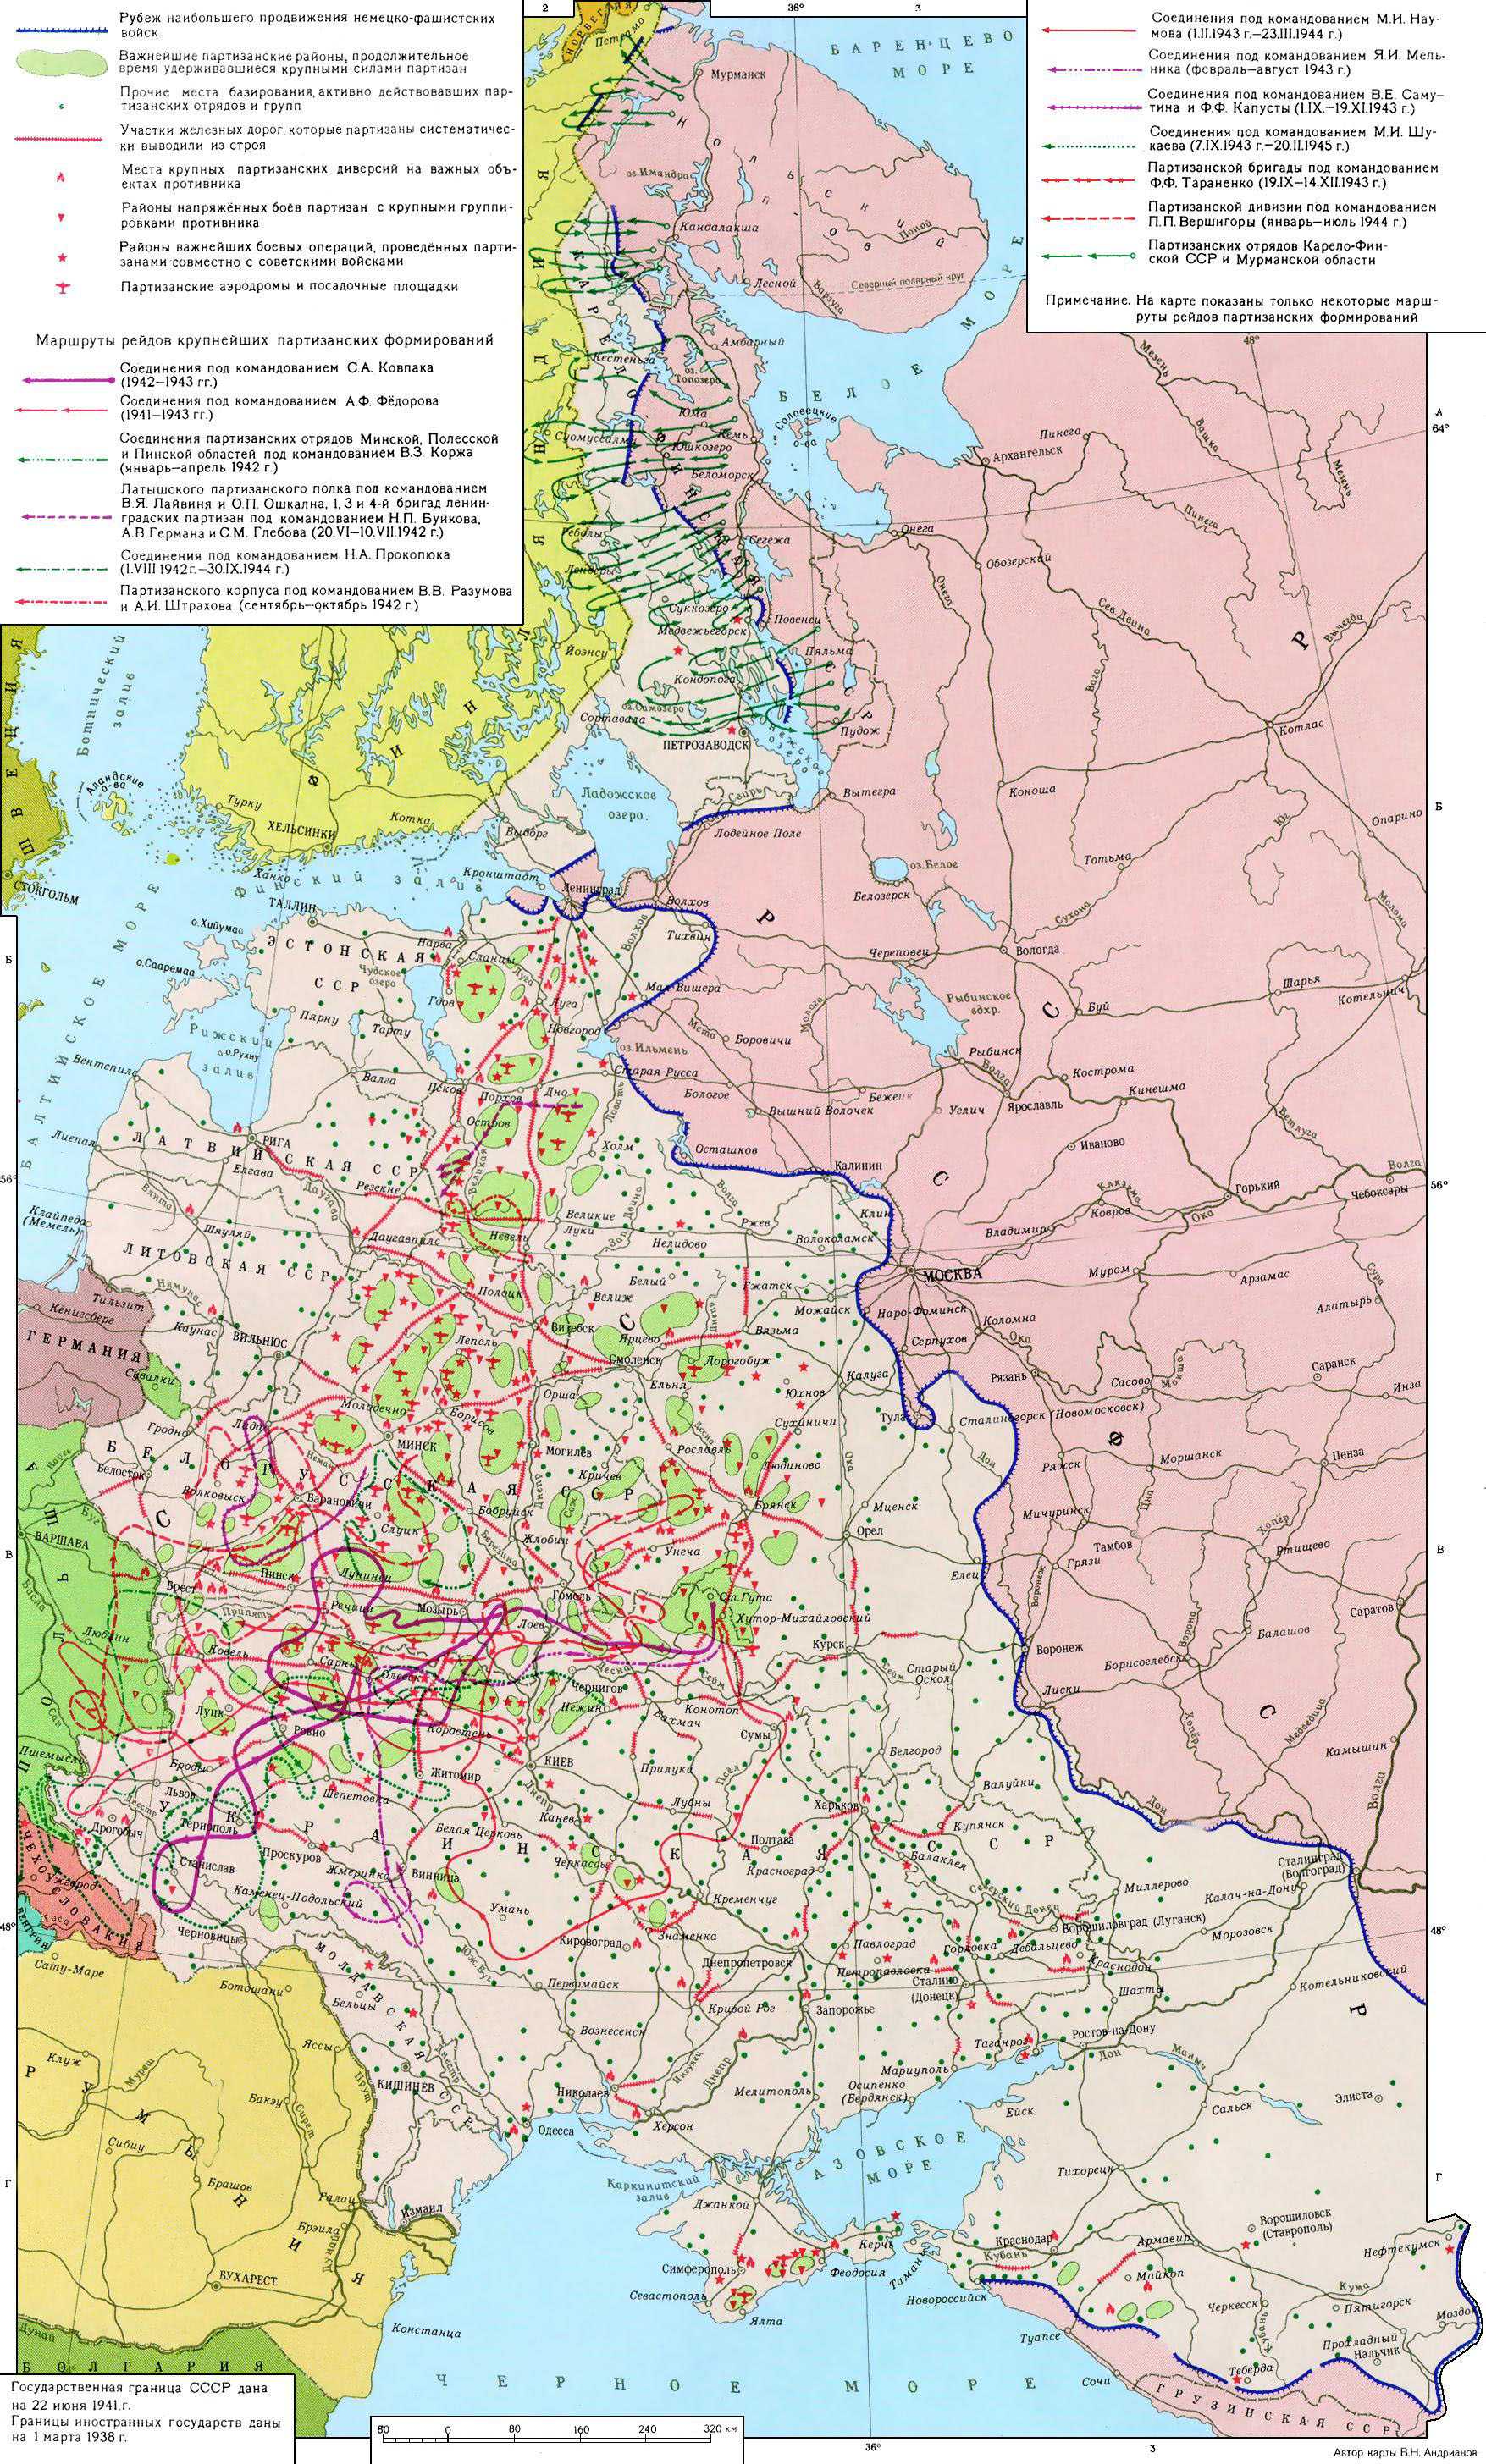 Партизанское движение в Великой Отечественной войне 1941-45